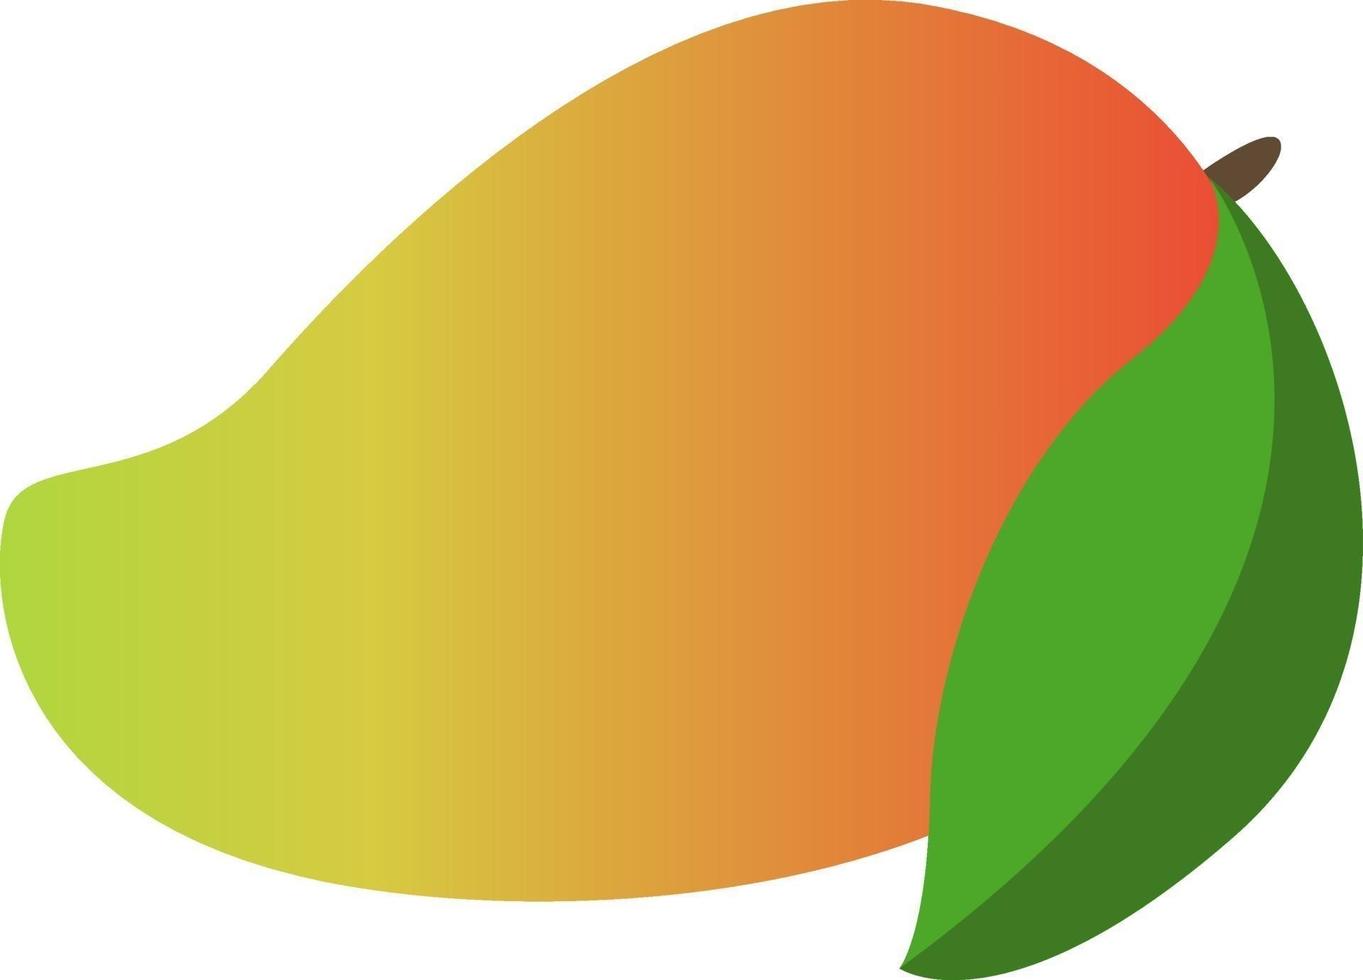 Flat mango, illustration, vector on white background